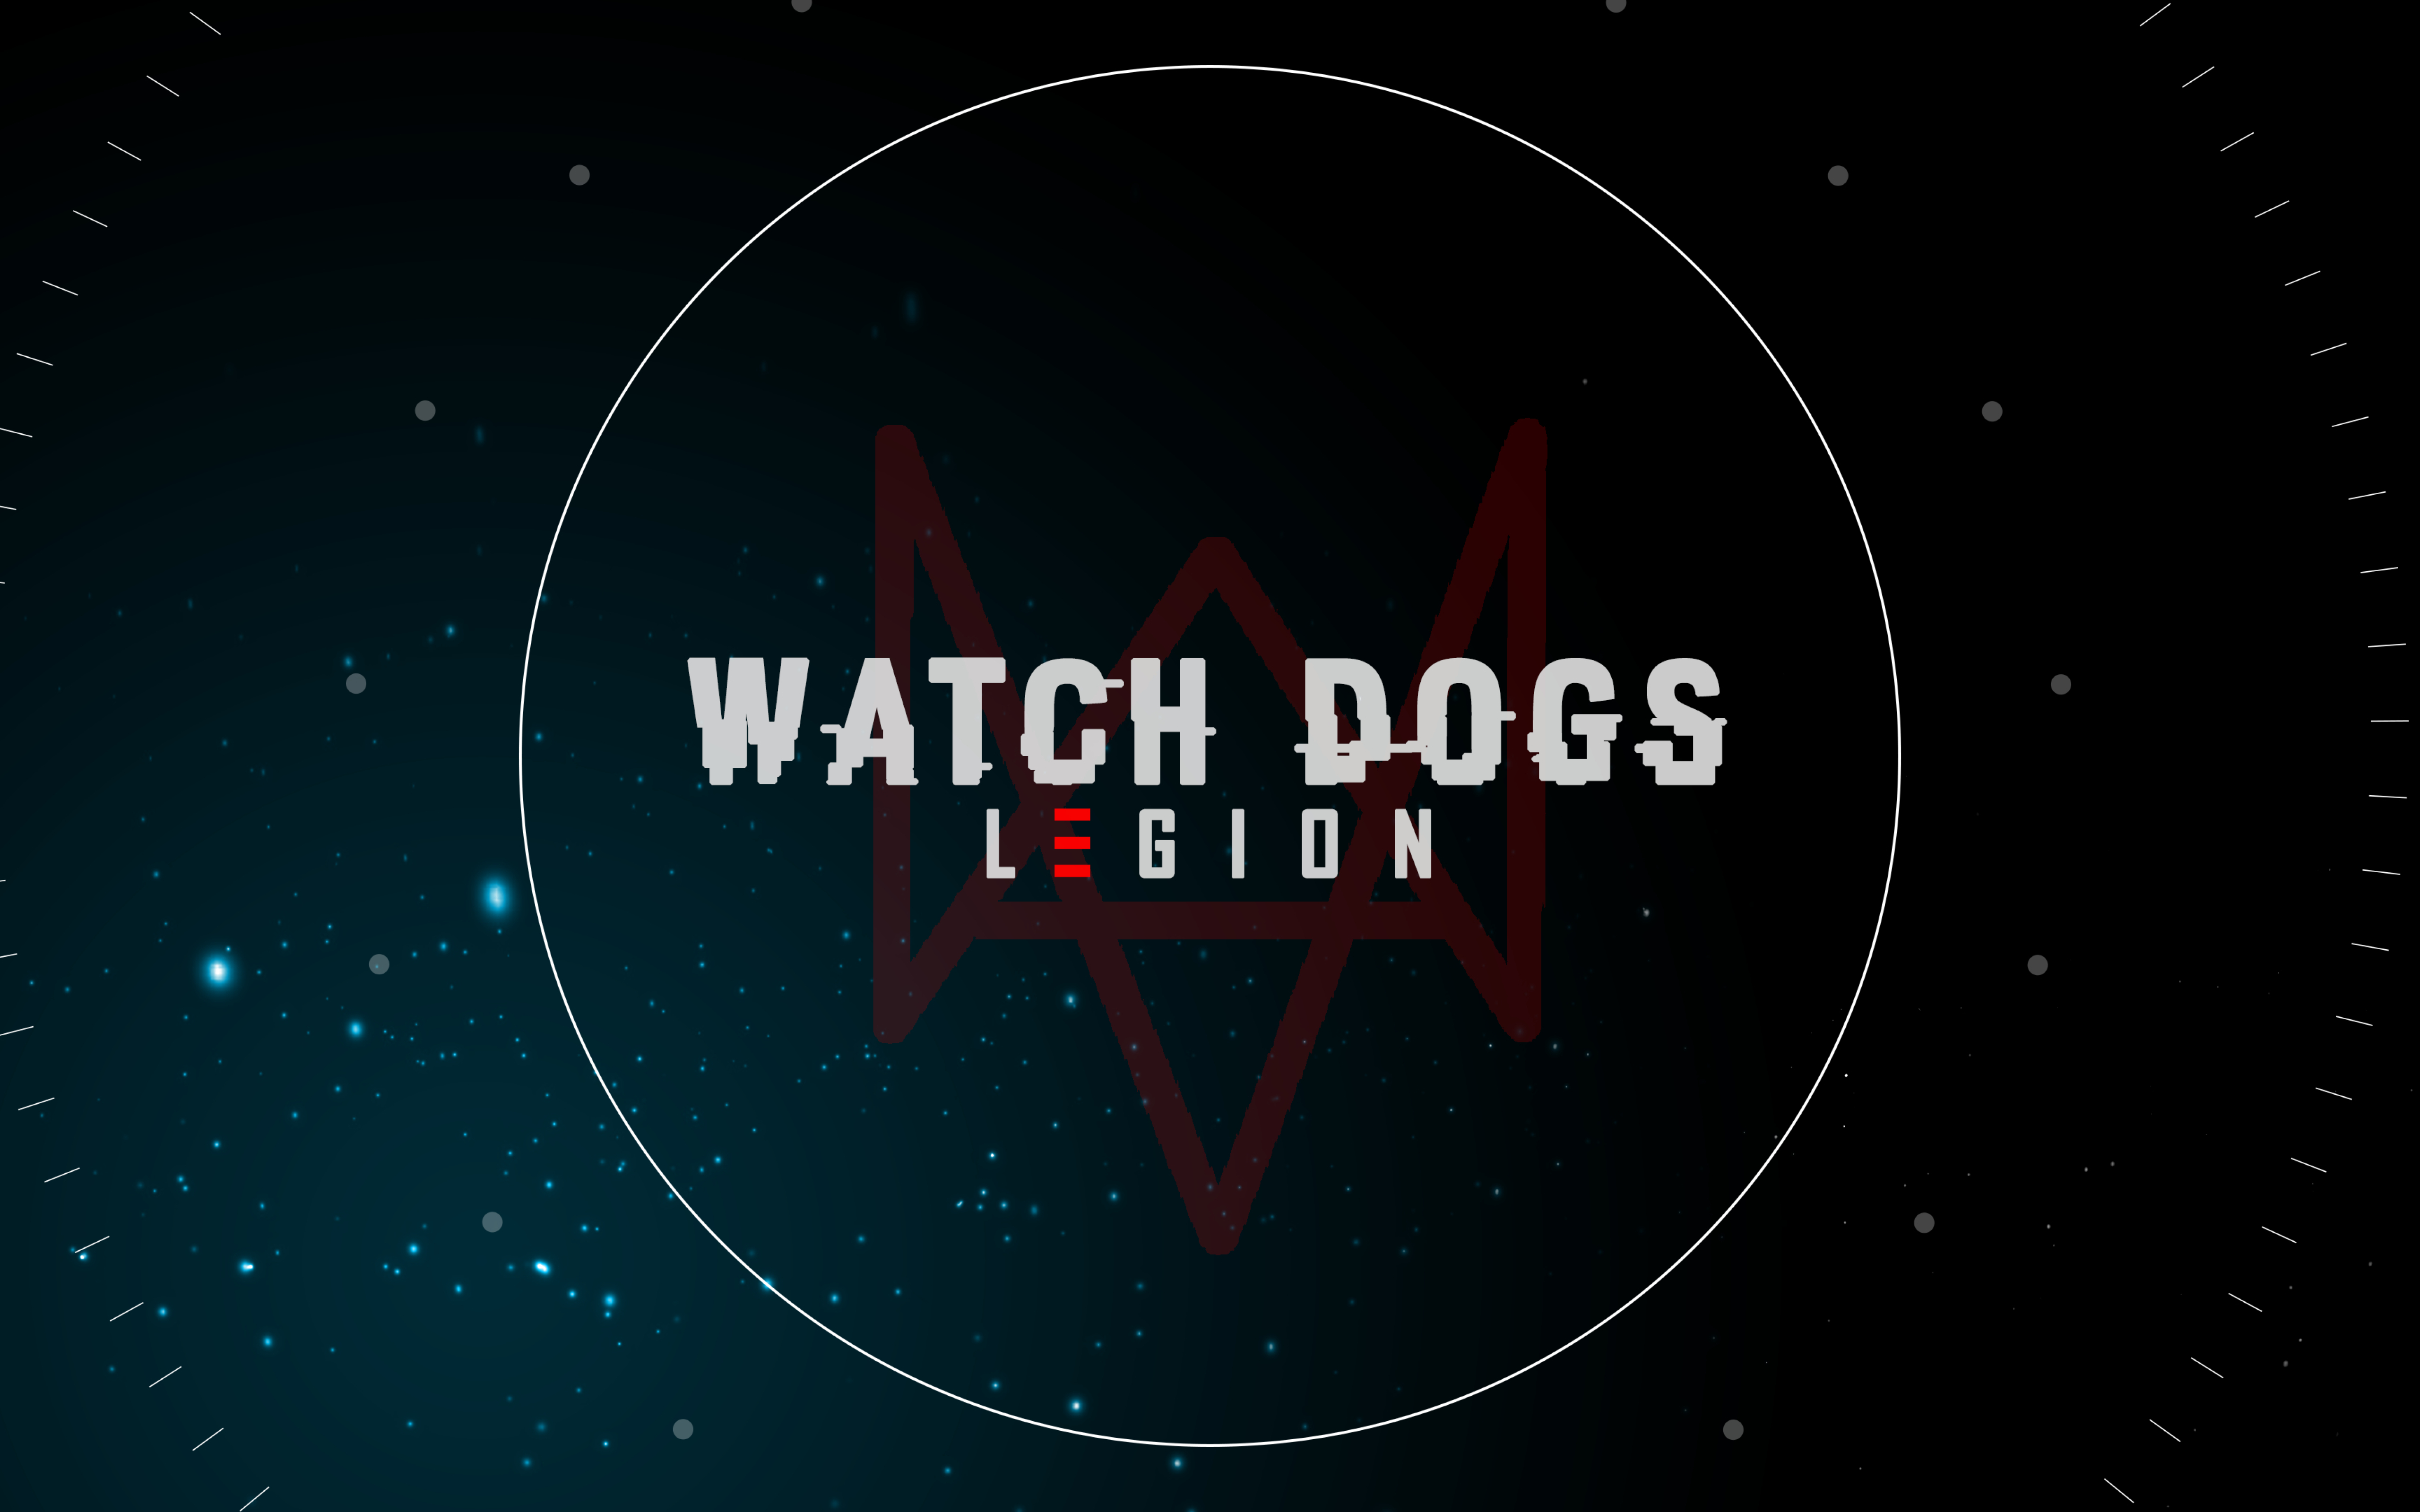 5120x3200 Resolution Watch Dogs Legion Logo 5120x3200 Resolution ...